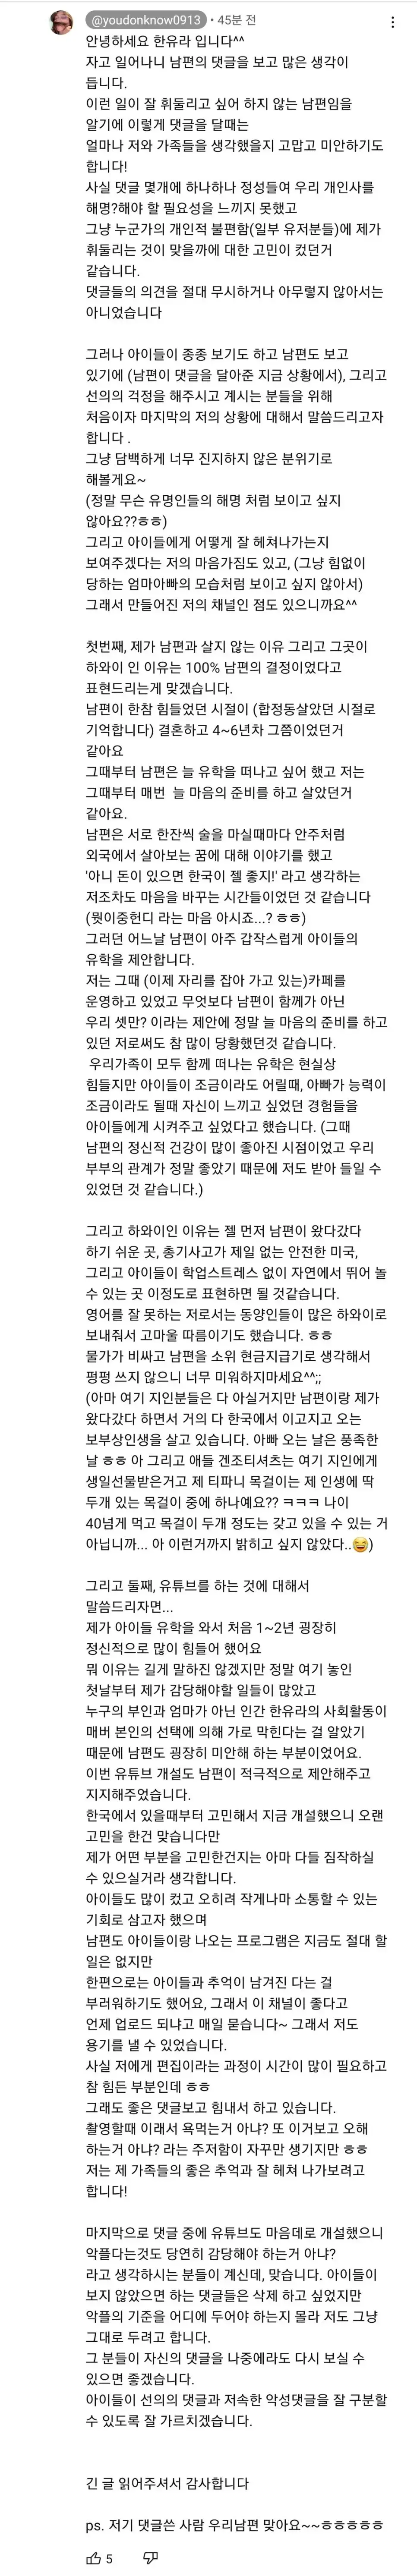 한유라 유튜브 정형돈 댓글 떴다.jpg | mbong.kr 엠봉